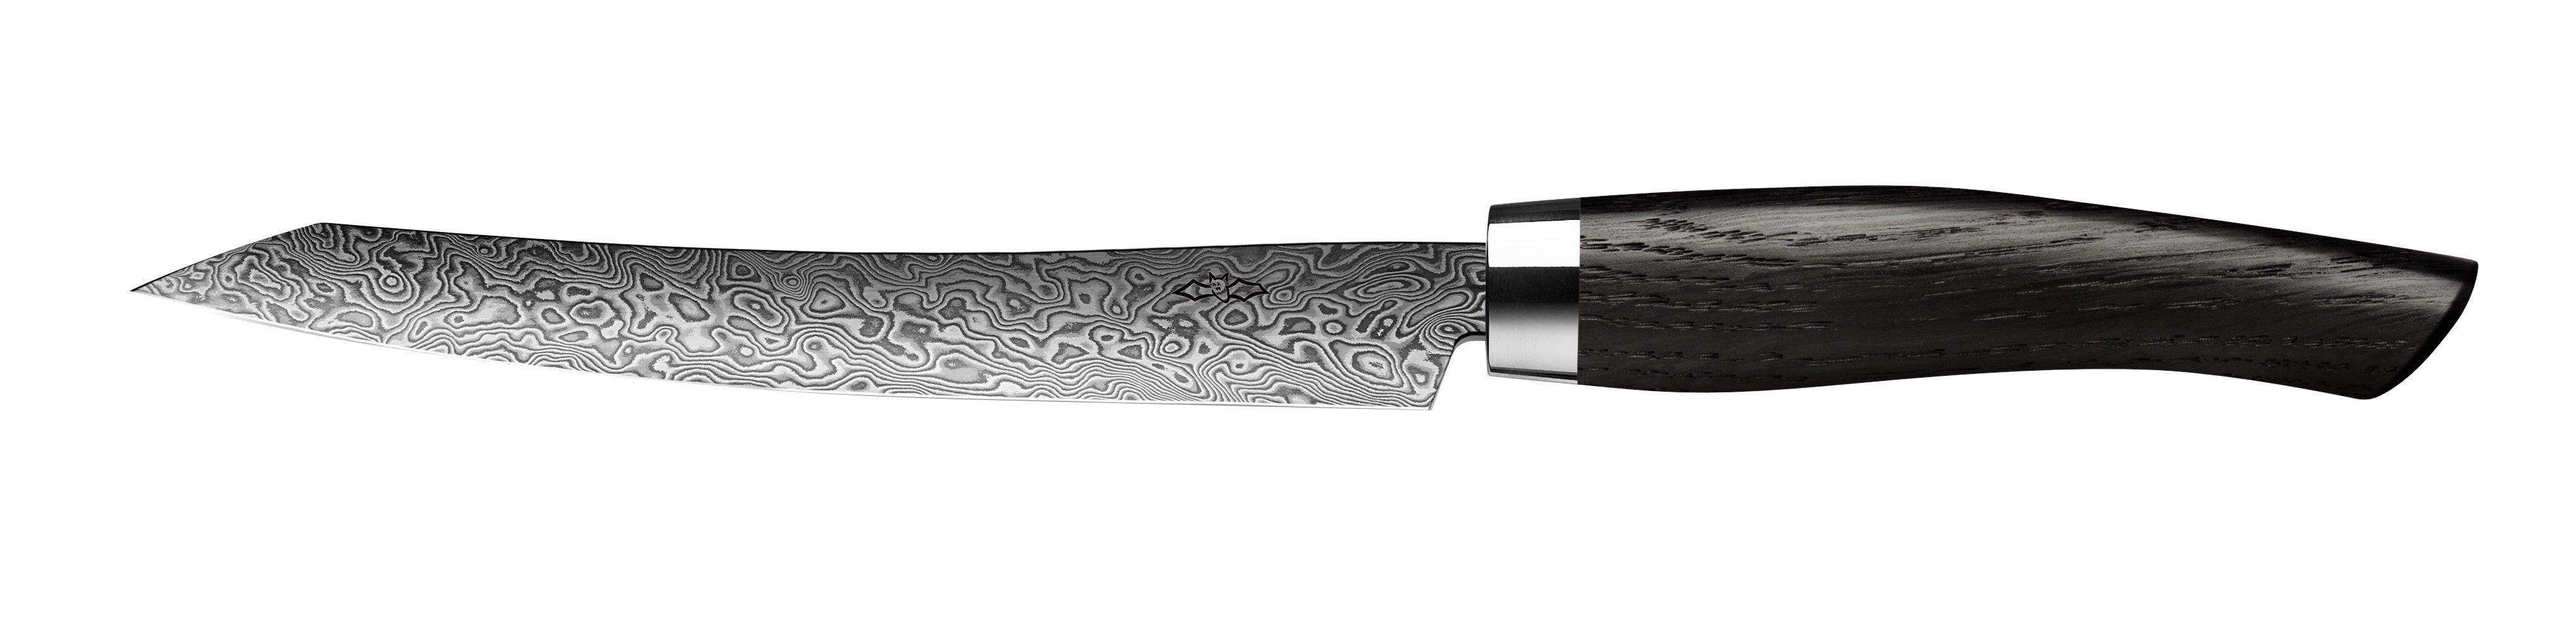 Nesmuk Tranchiermesser Slicer C90 mit Klinge aus Damaszener Stahl und Griff aus Mooreiche